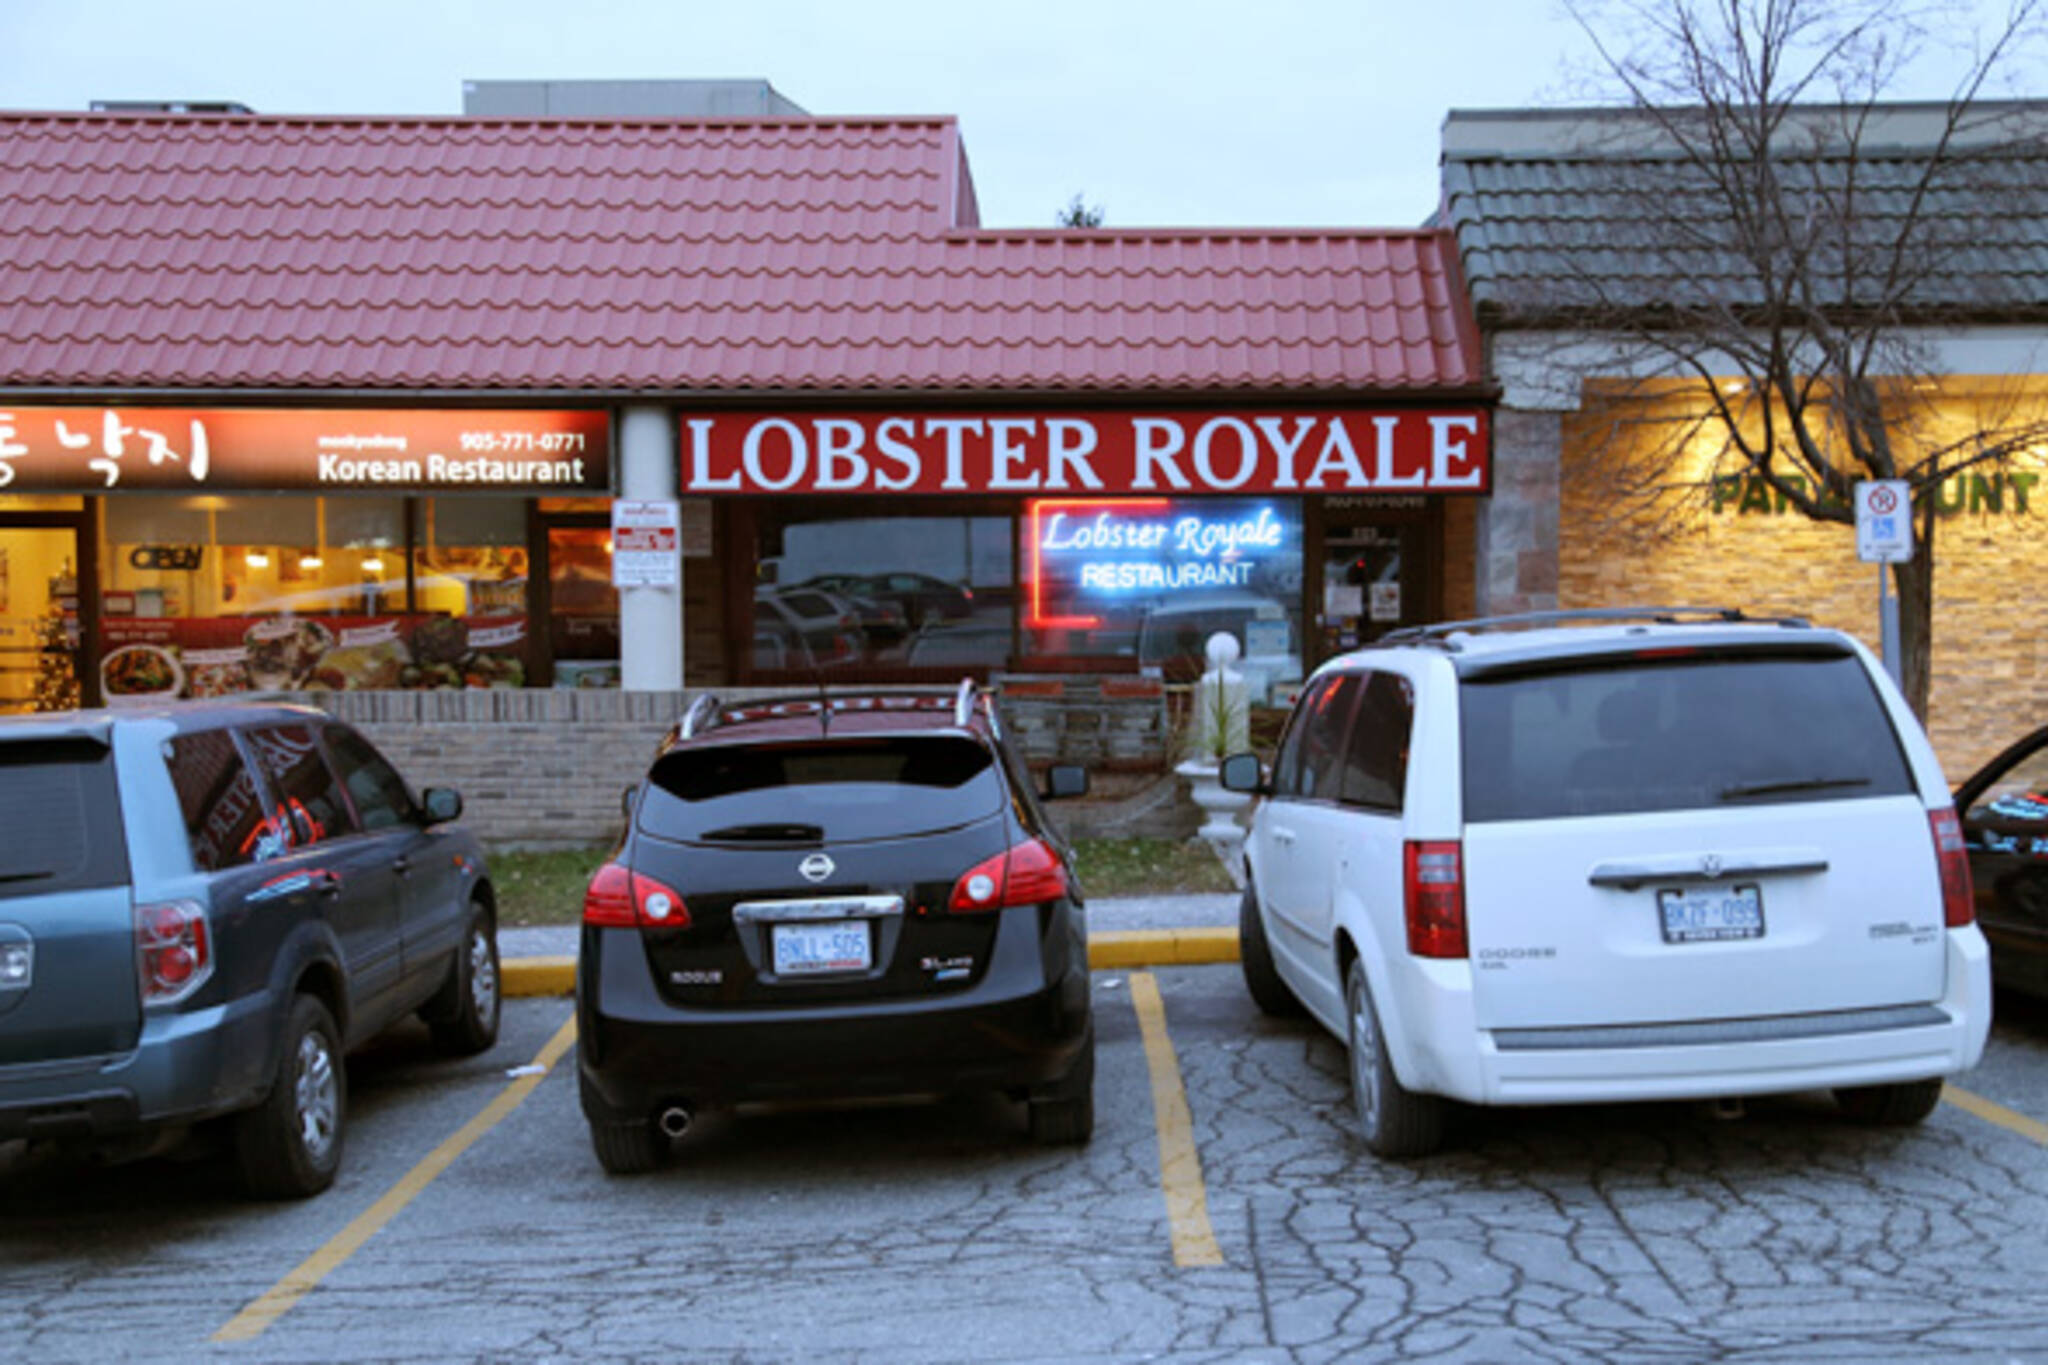 Lobster Royale